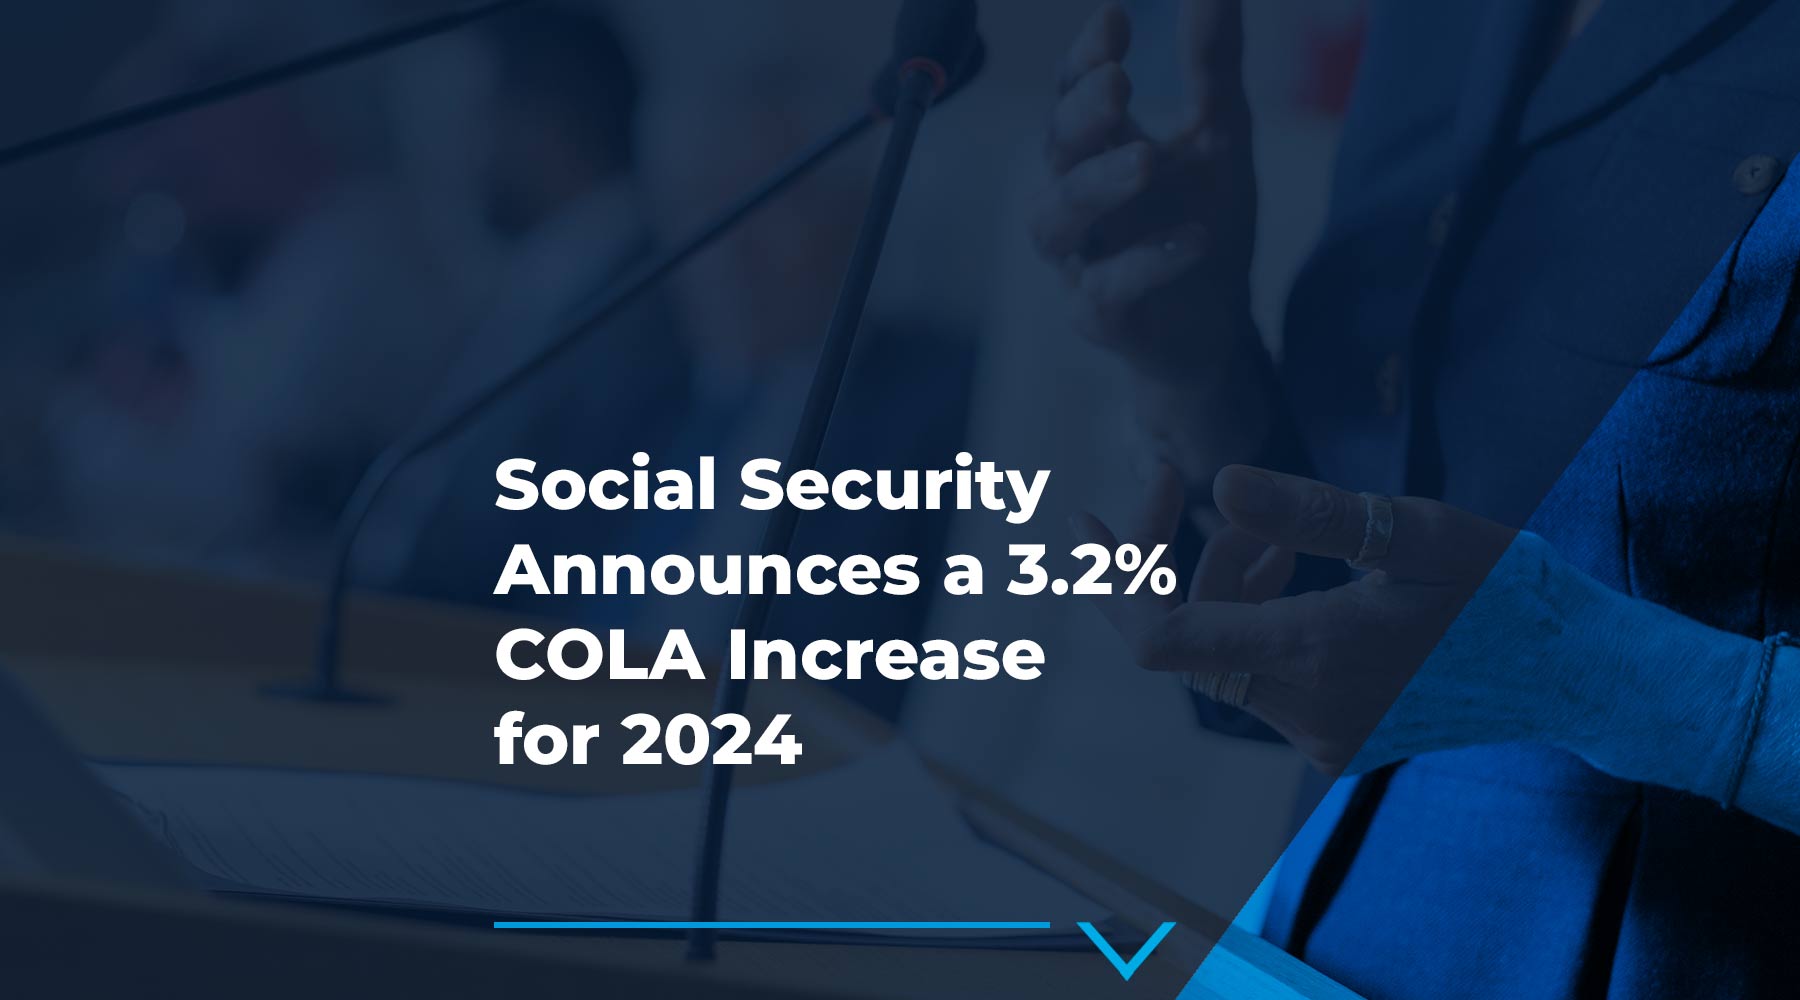 Social Security Announces a 3.2% COLA Increase for 2024